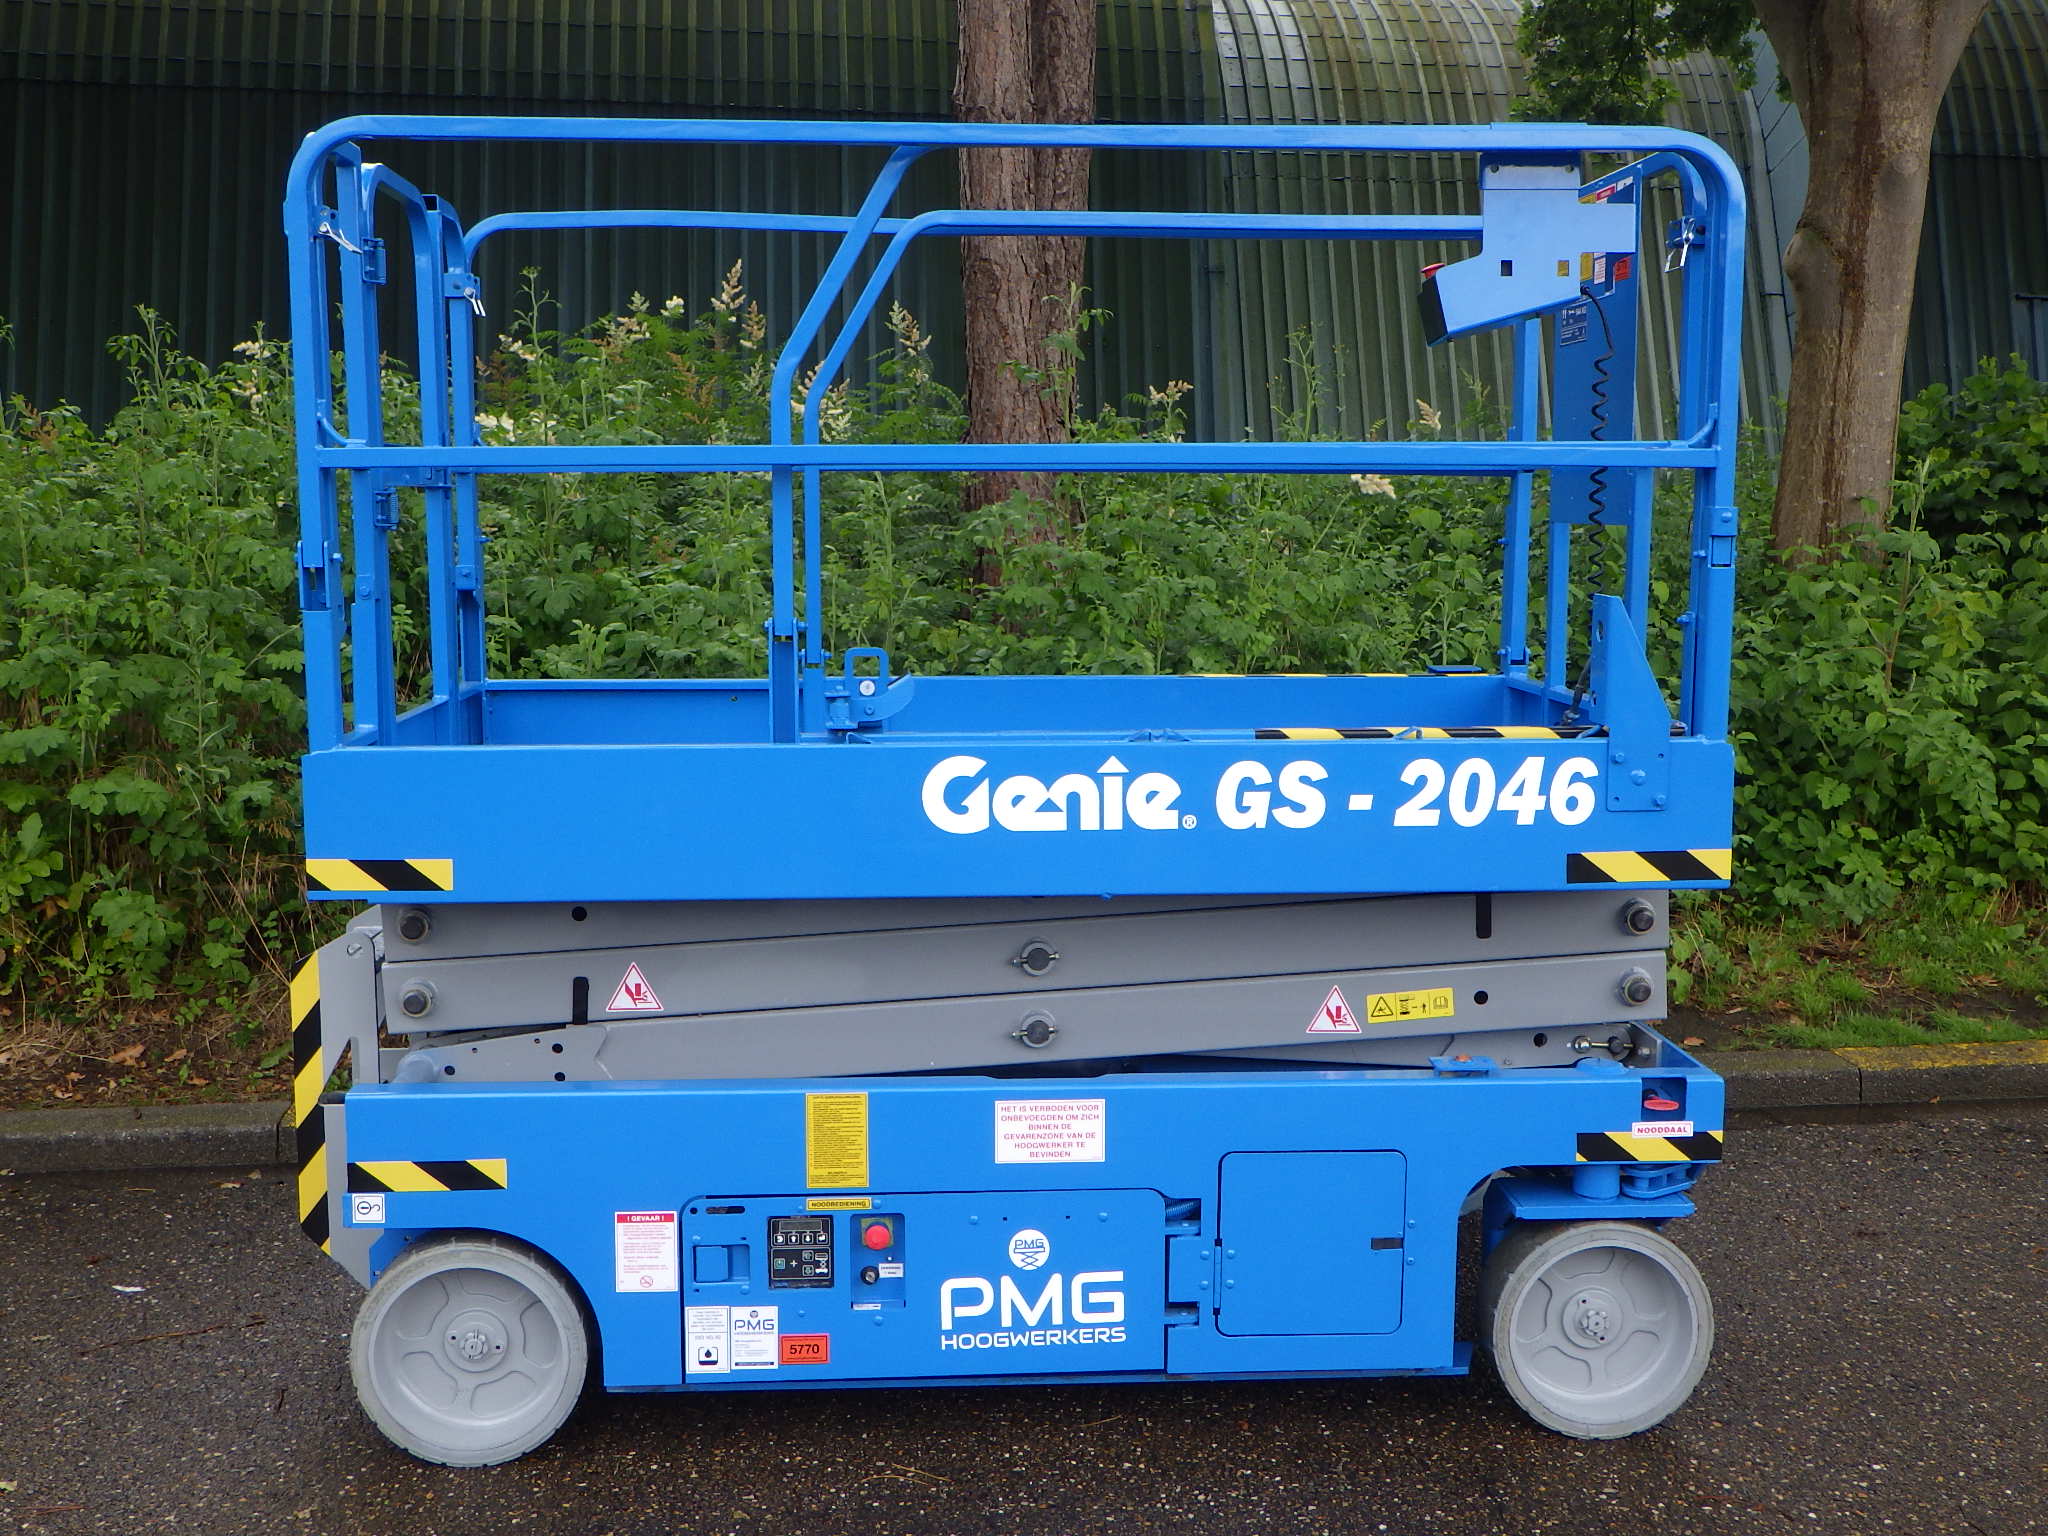 Genie GS-2046